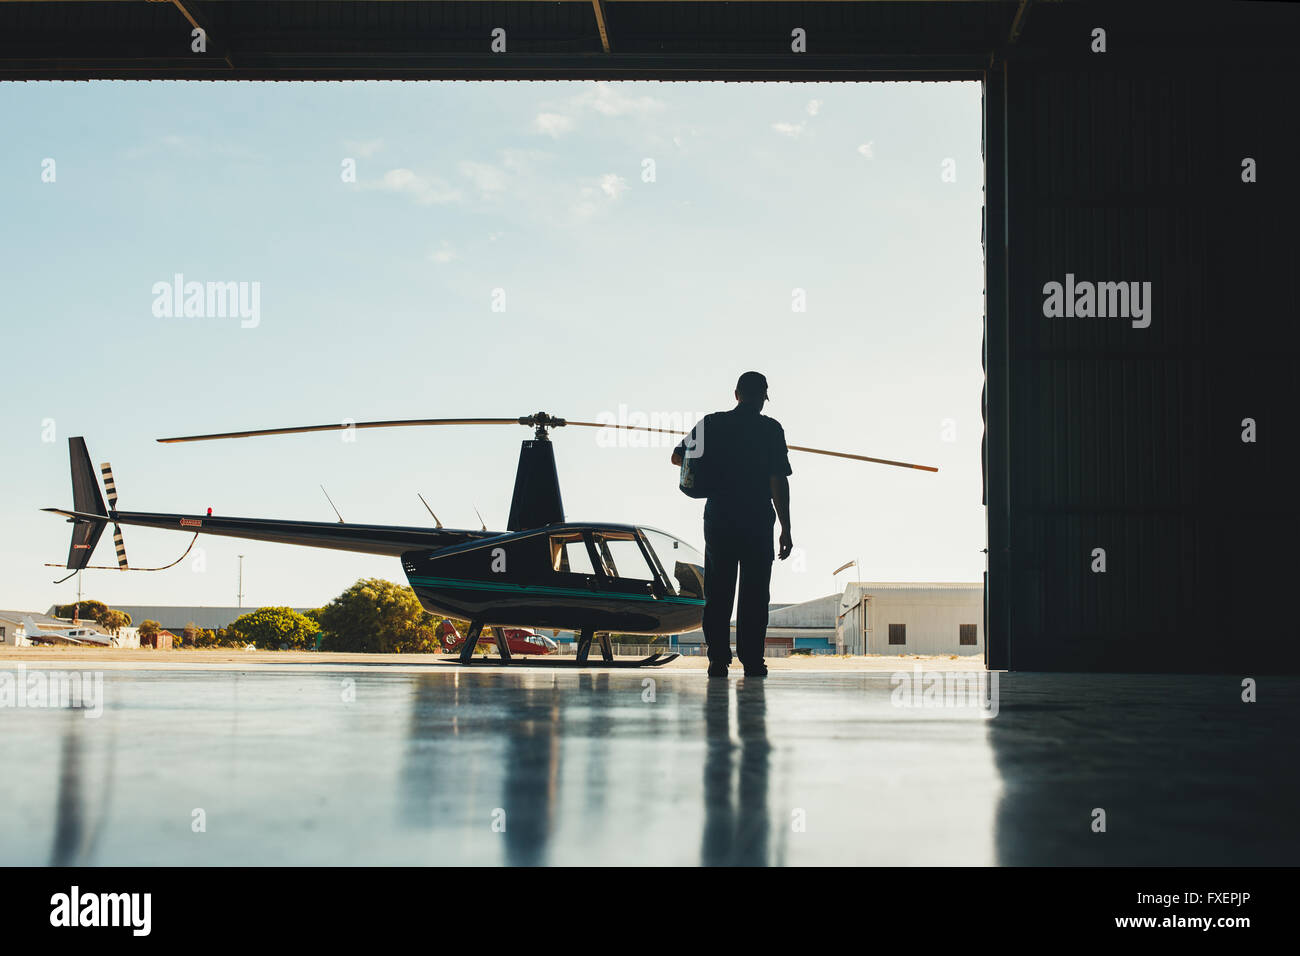 Sicht nach hinten gedreht der pilot zu Fuß in Richtung Hubschrauber. Pilot und Hubschrauber in einem Flugzeughangar. Stockfoto